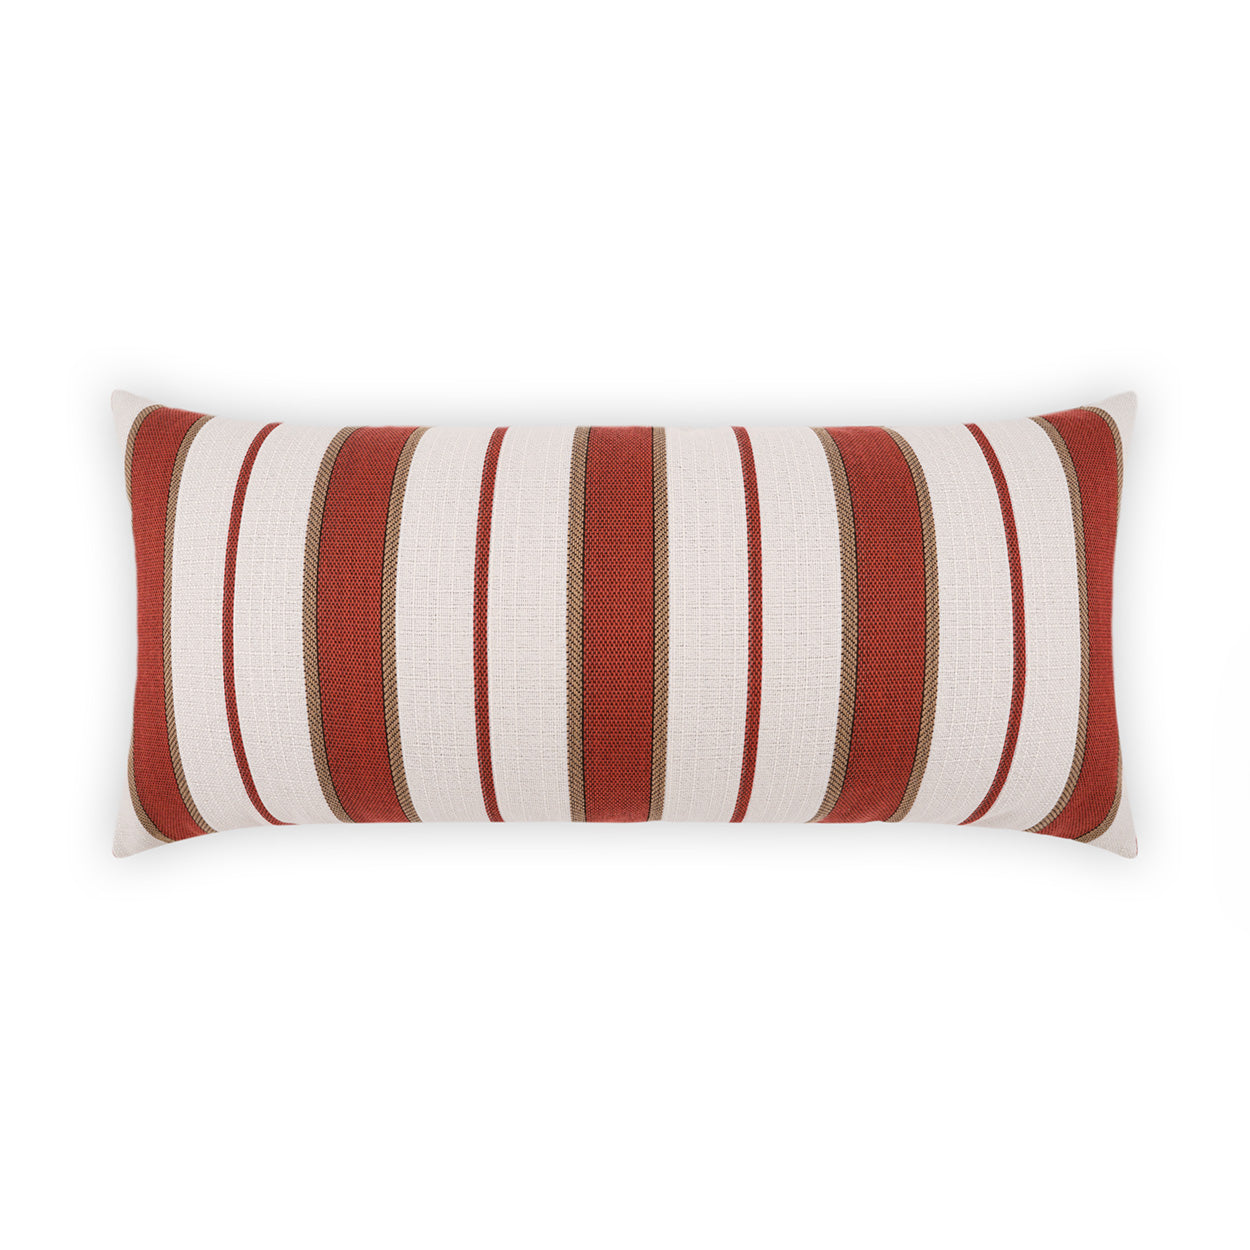 Outdoor Paruani Lumbar Pillow - Red